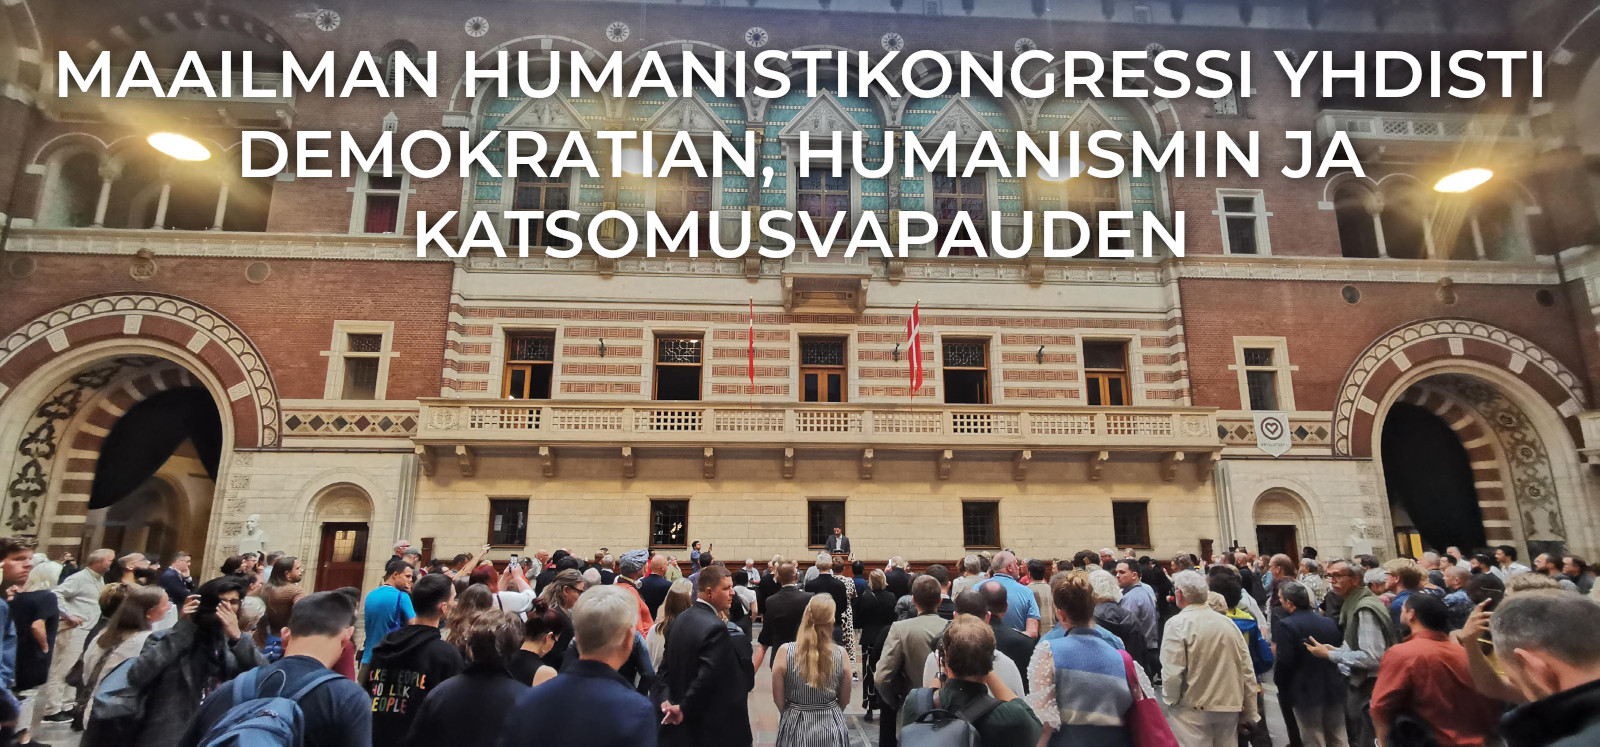 Maailman humanistikongressi yhdisti demokratian, humanismin ja katsomusvapauden